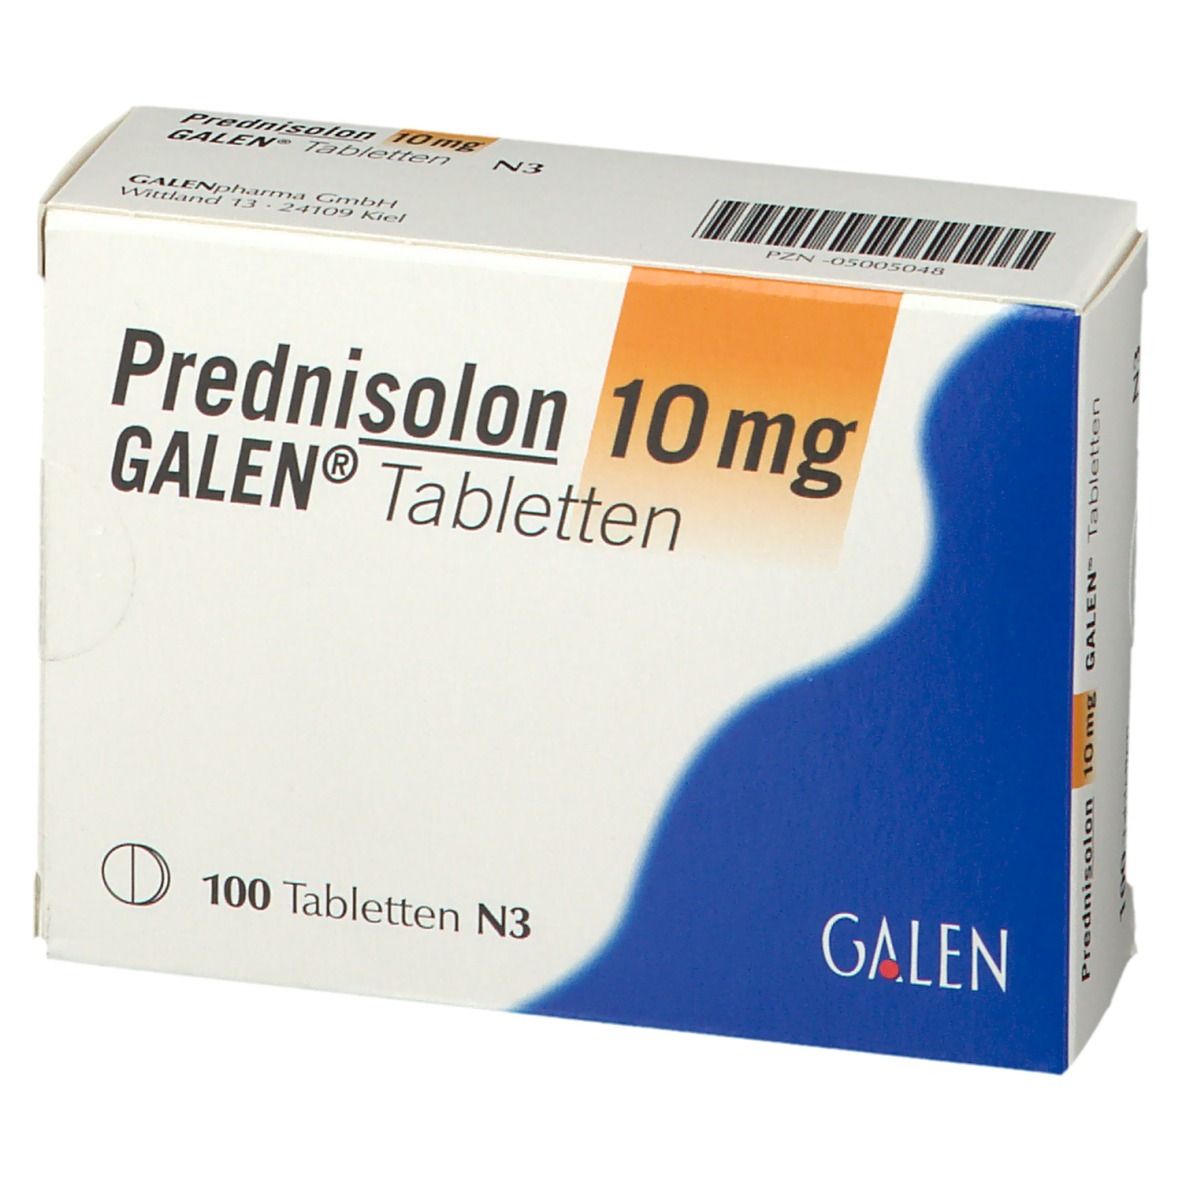 Prednisolon 10 mg GALEN®